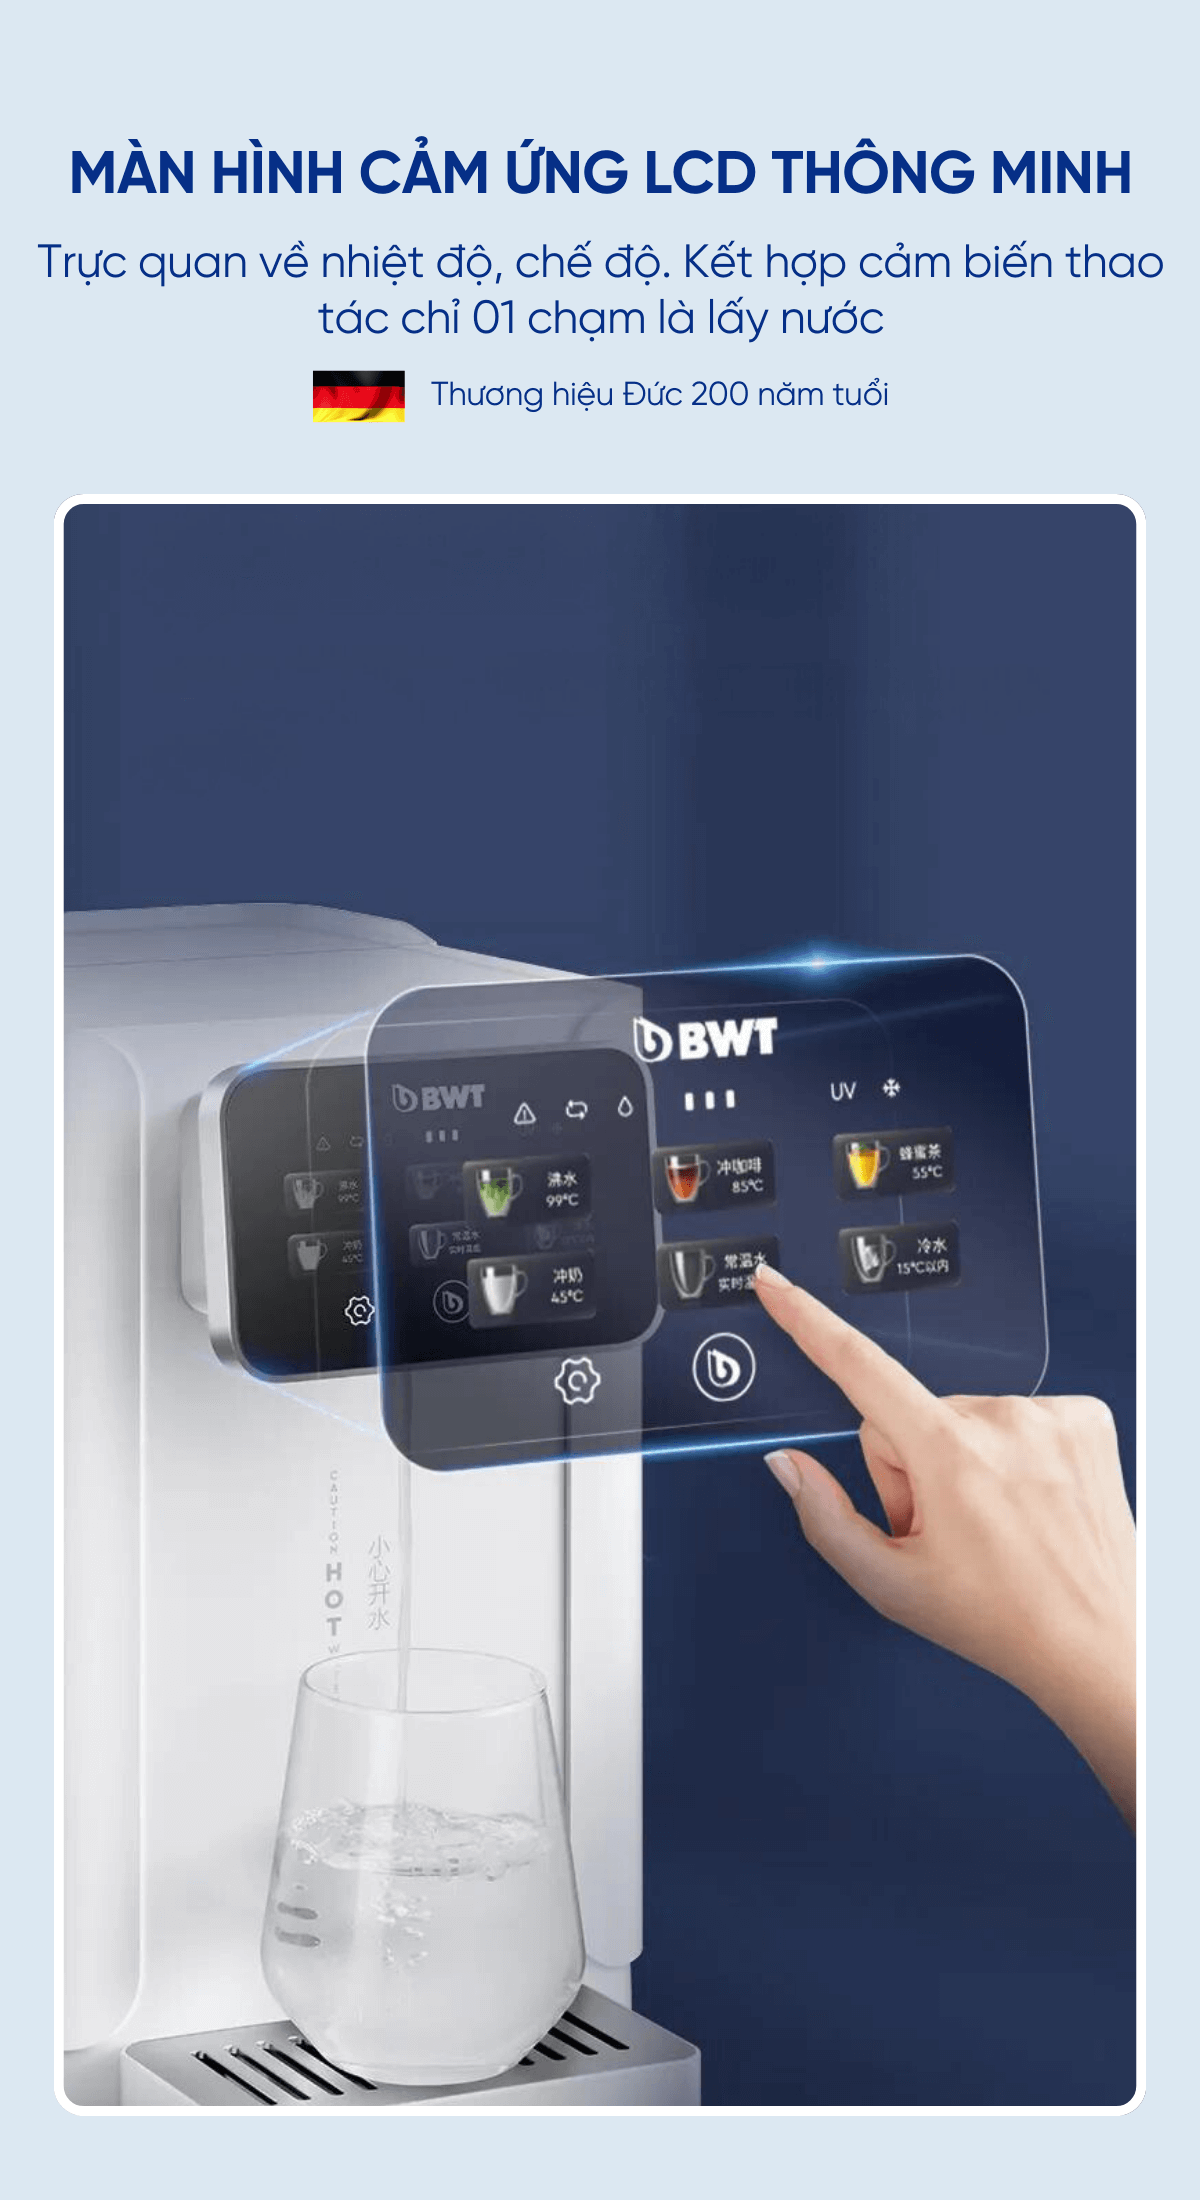 Bình thủy điện nóng lạnh BWT SUPER COMBINE H2C có màn hình LCD cảm ứng